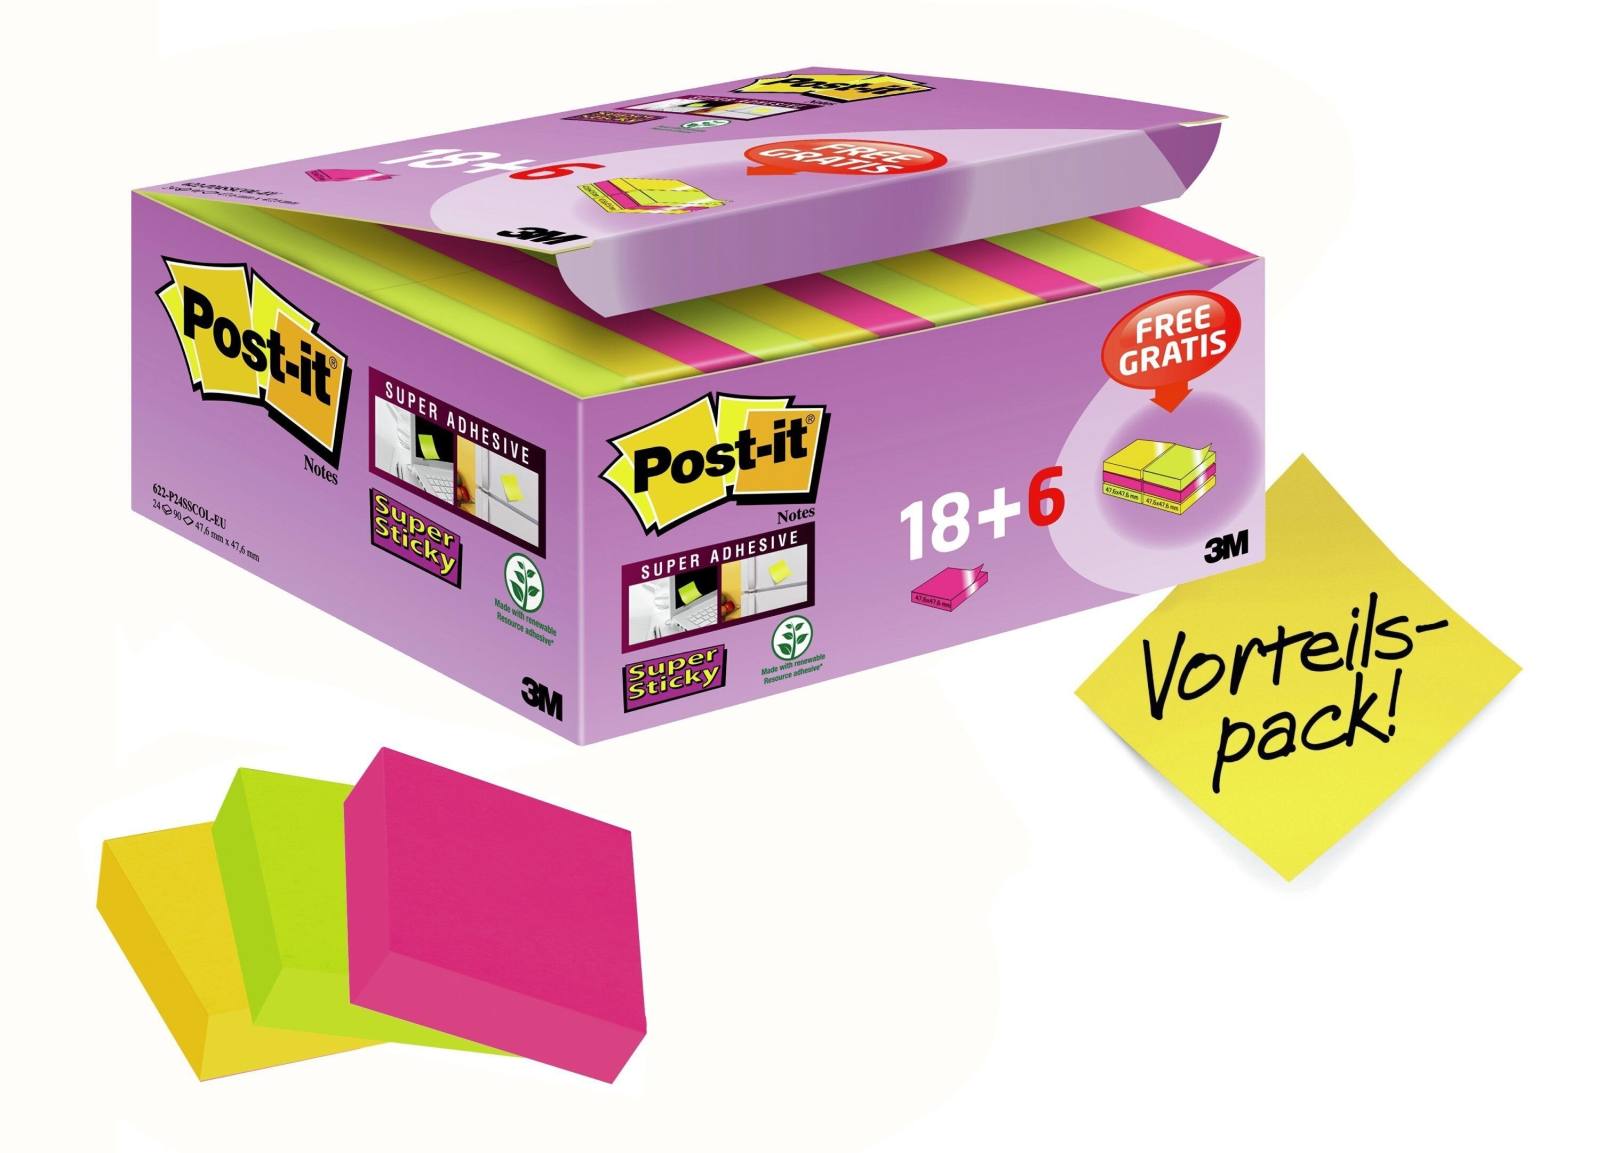 3M Post-it Super Sticky Notes Promotion 622P24SC, 24 blocs de 90 hojas en una caja a un precio especial, ultra rosa, amarillo, verde neón, 48 mm x 48 mm, sin celofanizar individualmente, certificado PEFC